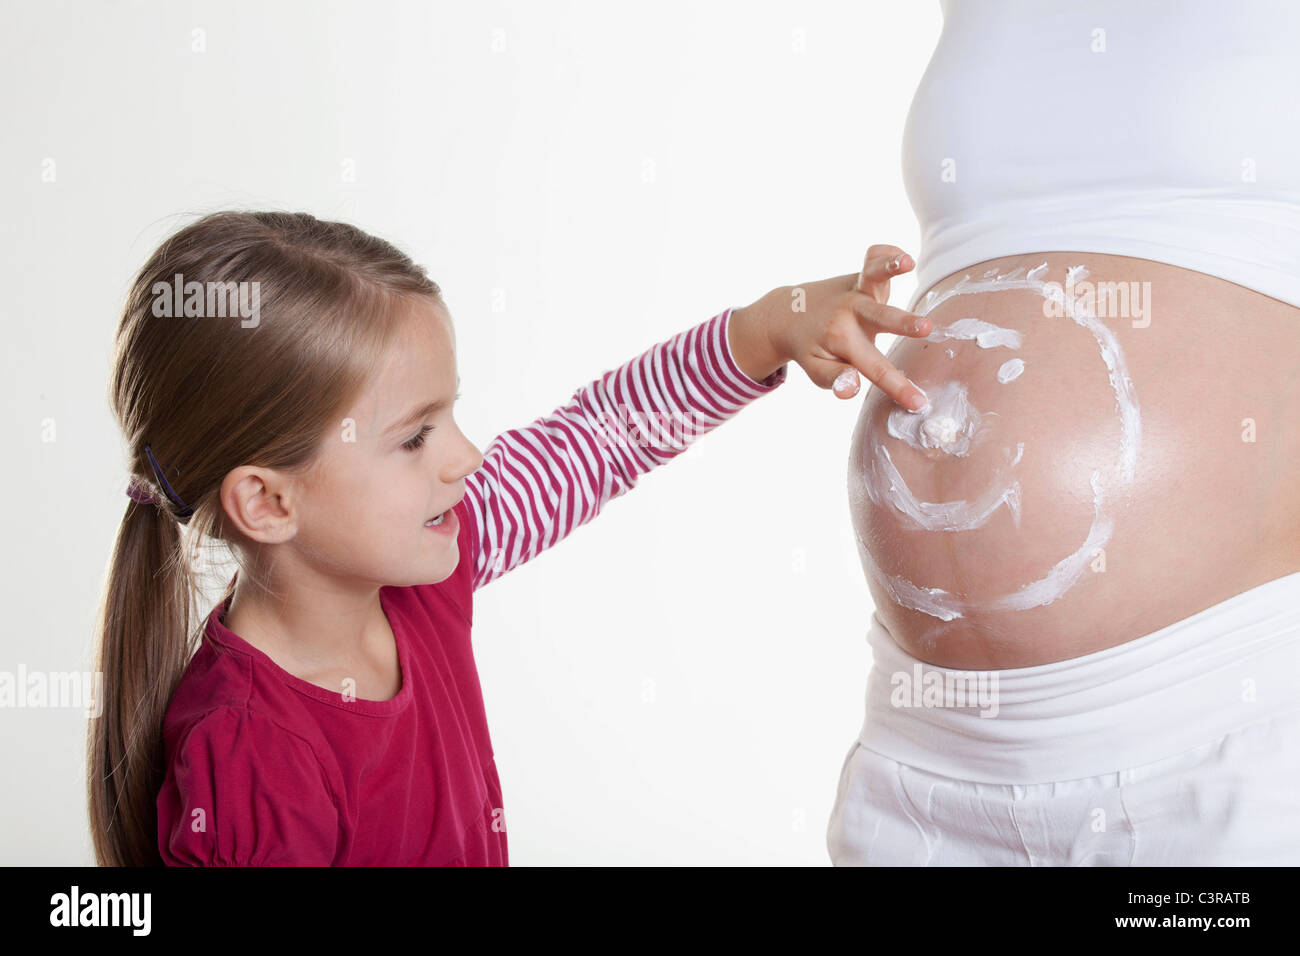 Dessin fille smiley sur l'estomac de sa mère enceinte Banque D'Images